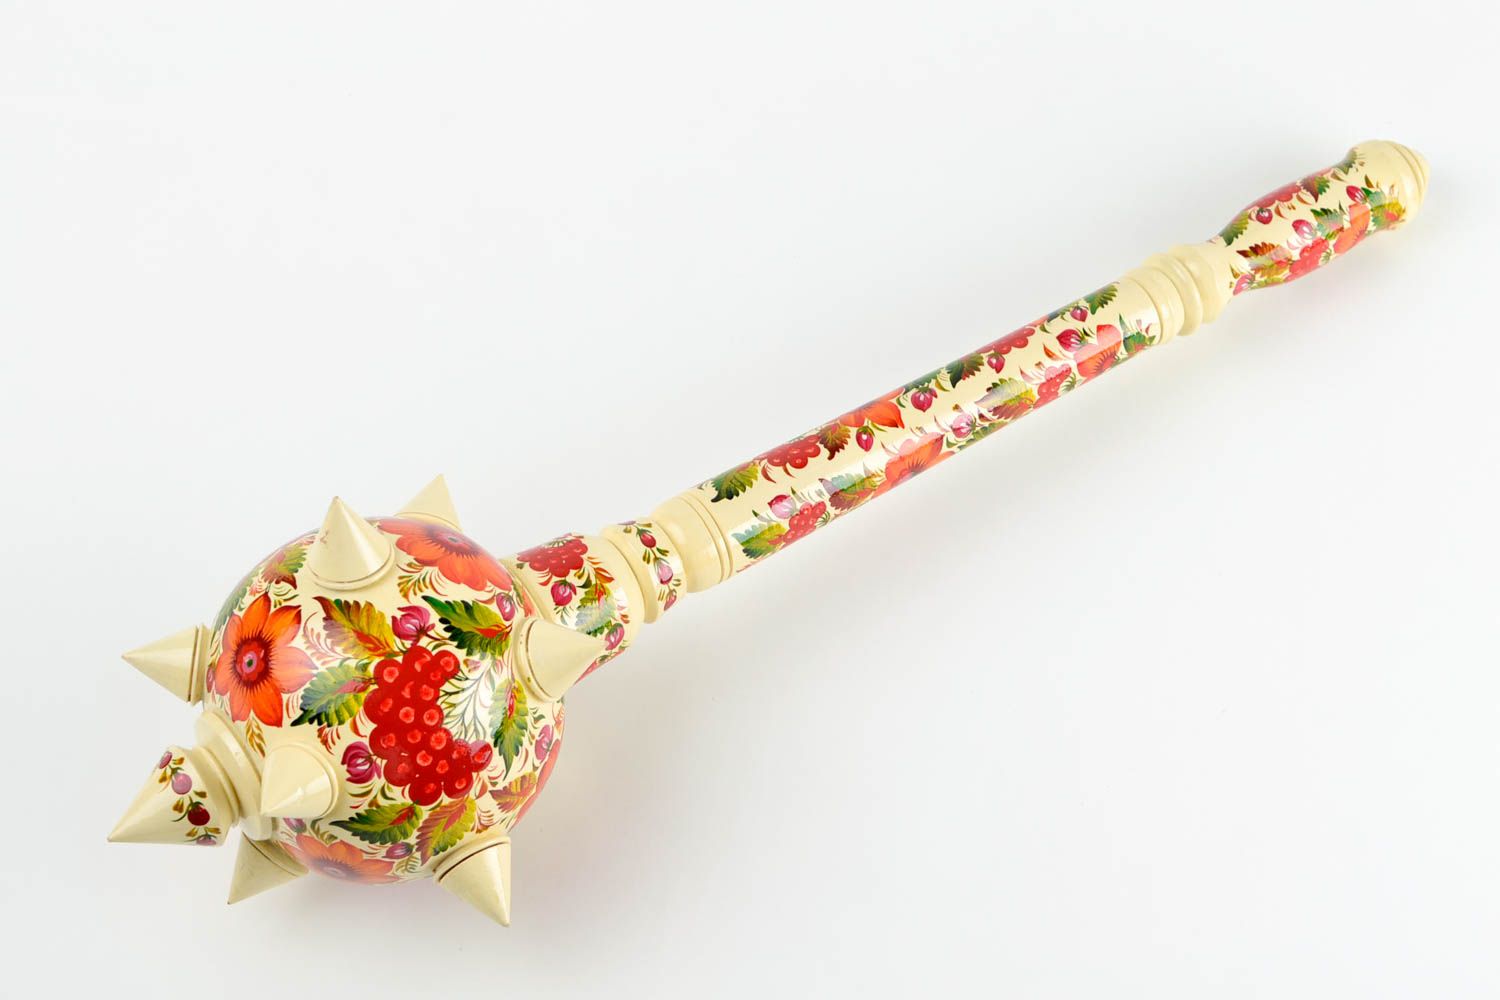 Handmade designer decorative mace stylish ethnic weapon for decorative use only photo 4